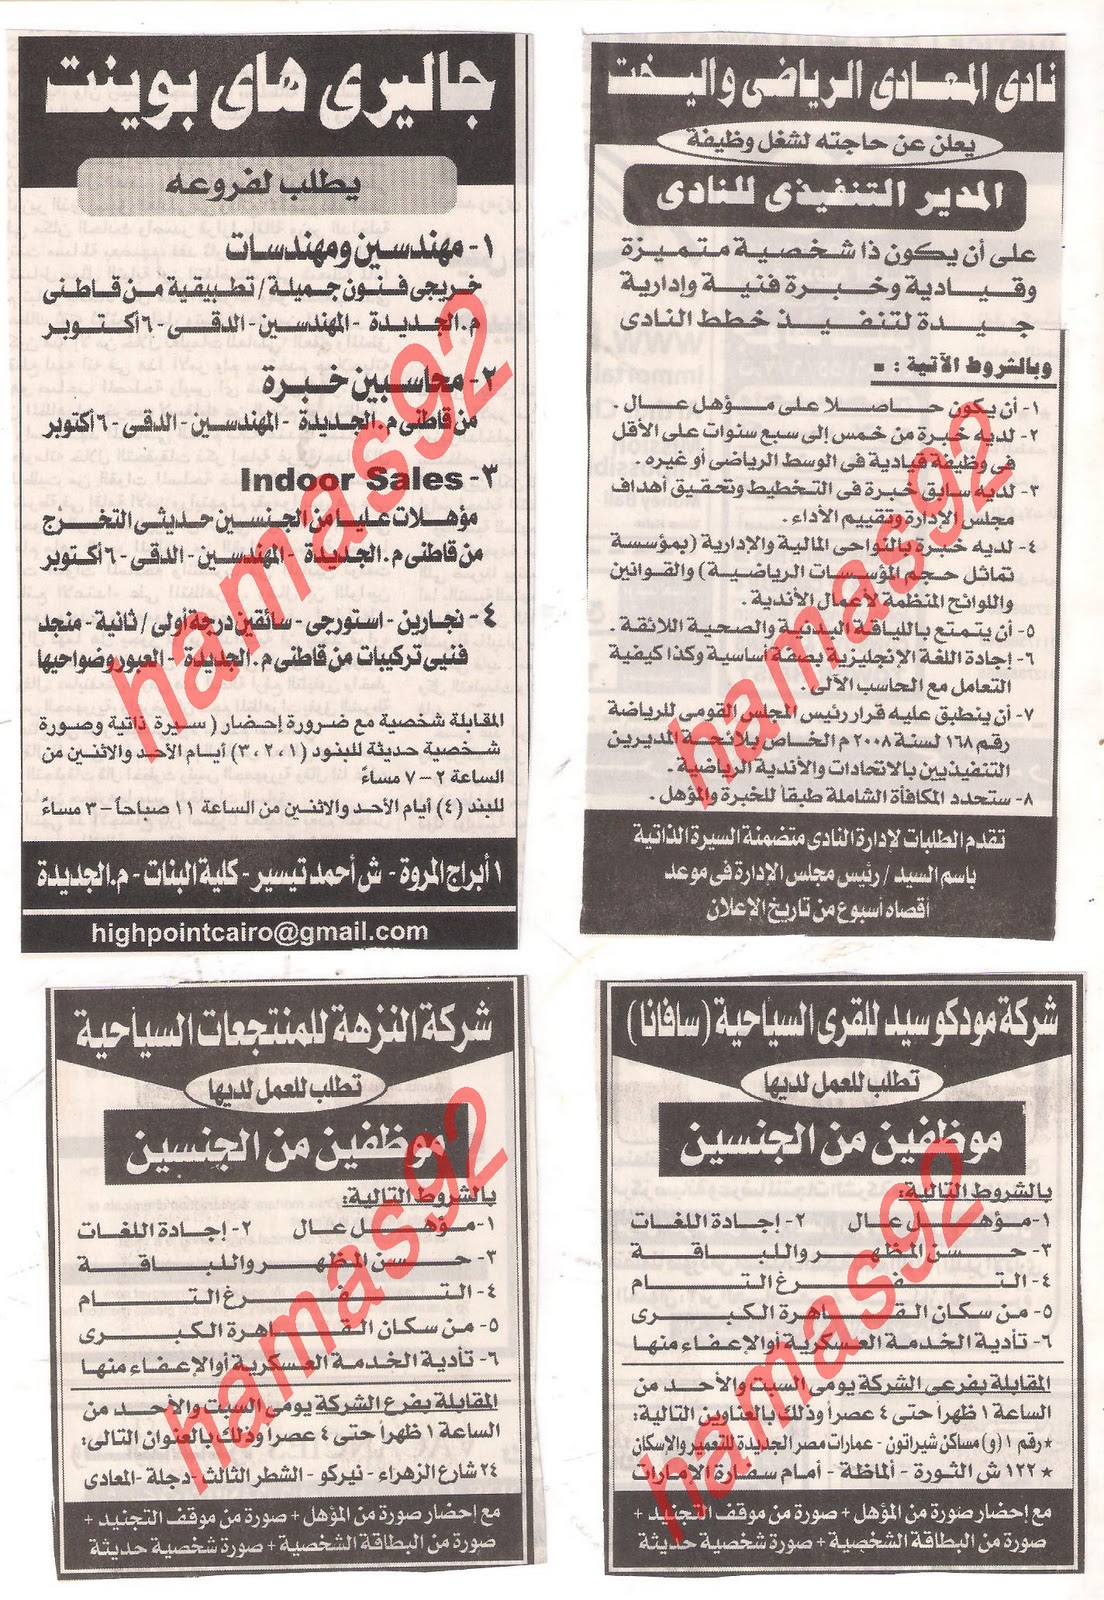 مصرى , وظائف خالية من جريدة الاهرام الجمعة 6\1\2012 , الجزء الثالث  Picture+014